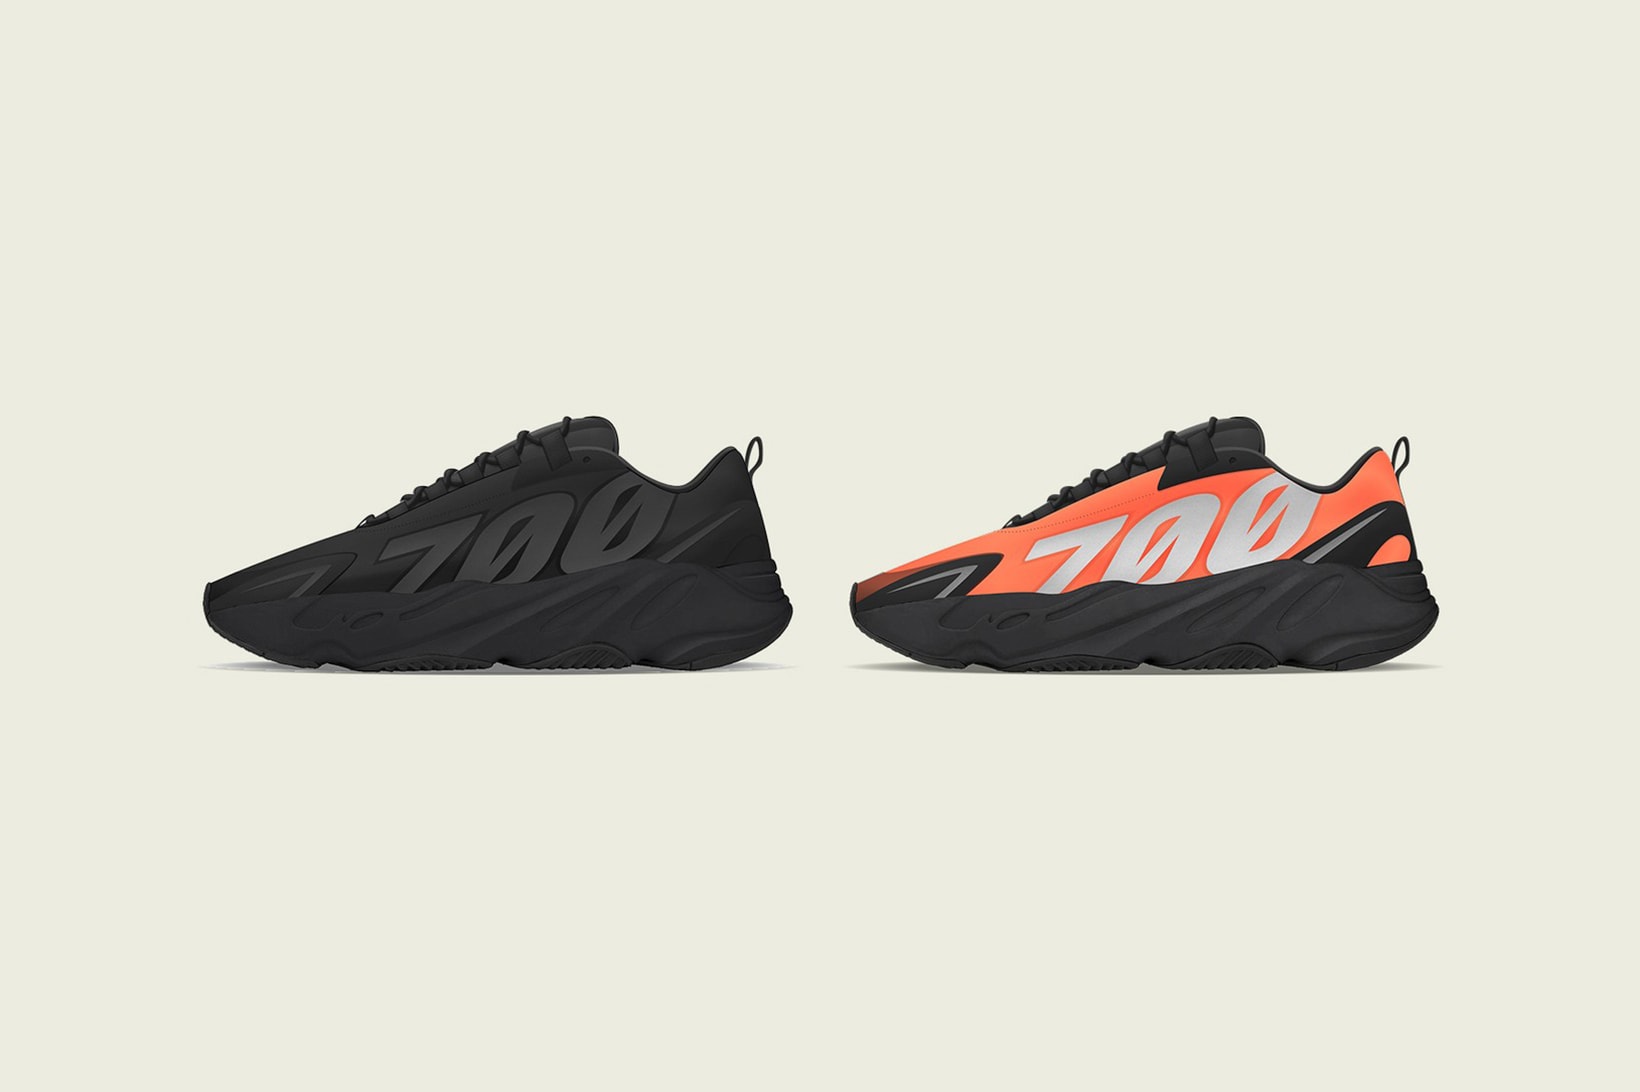 adidas kanye west yeezy boost 700 mnv sneakers black orange shoes footwear sneakerhead